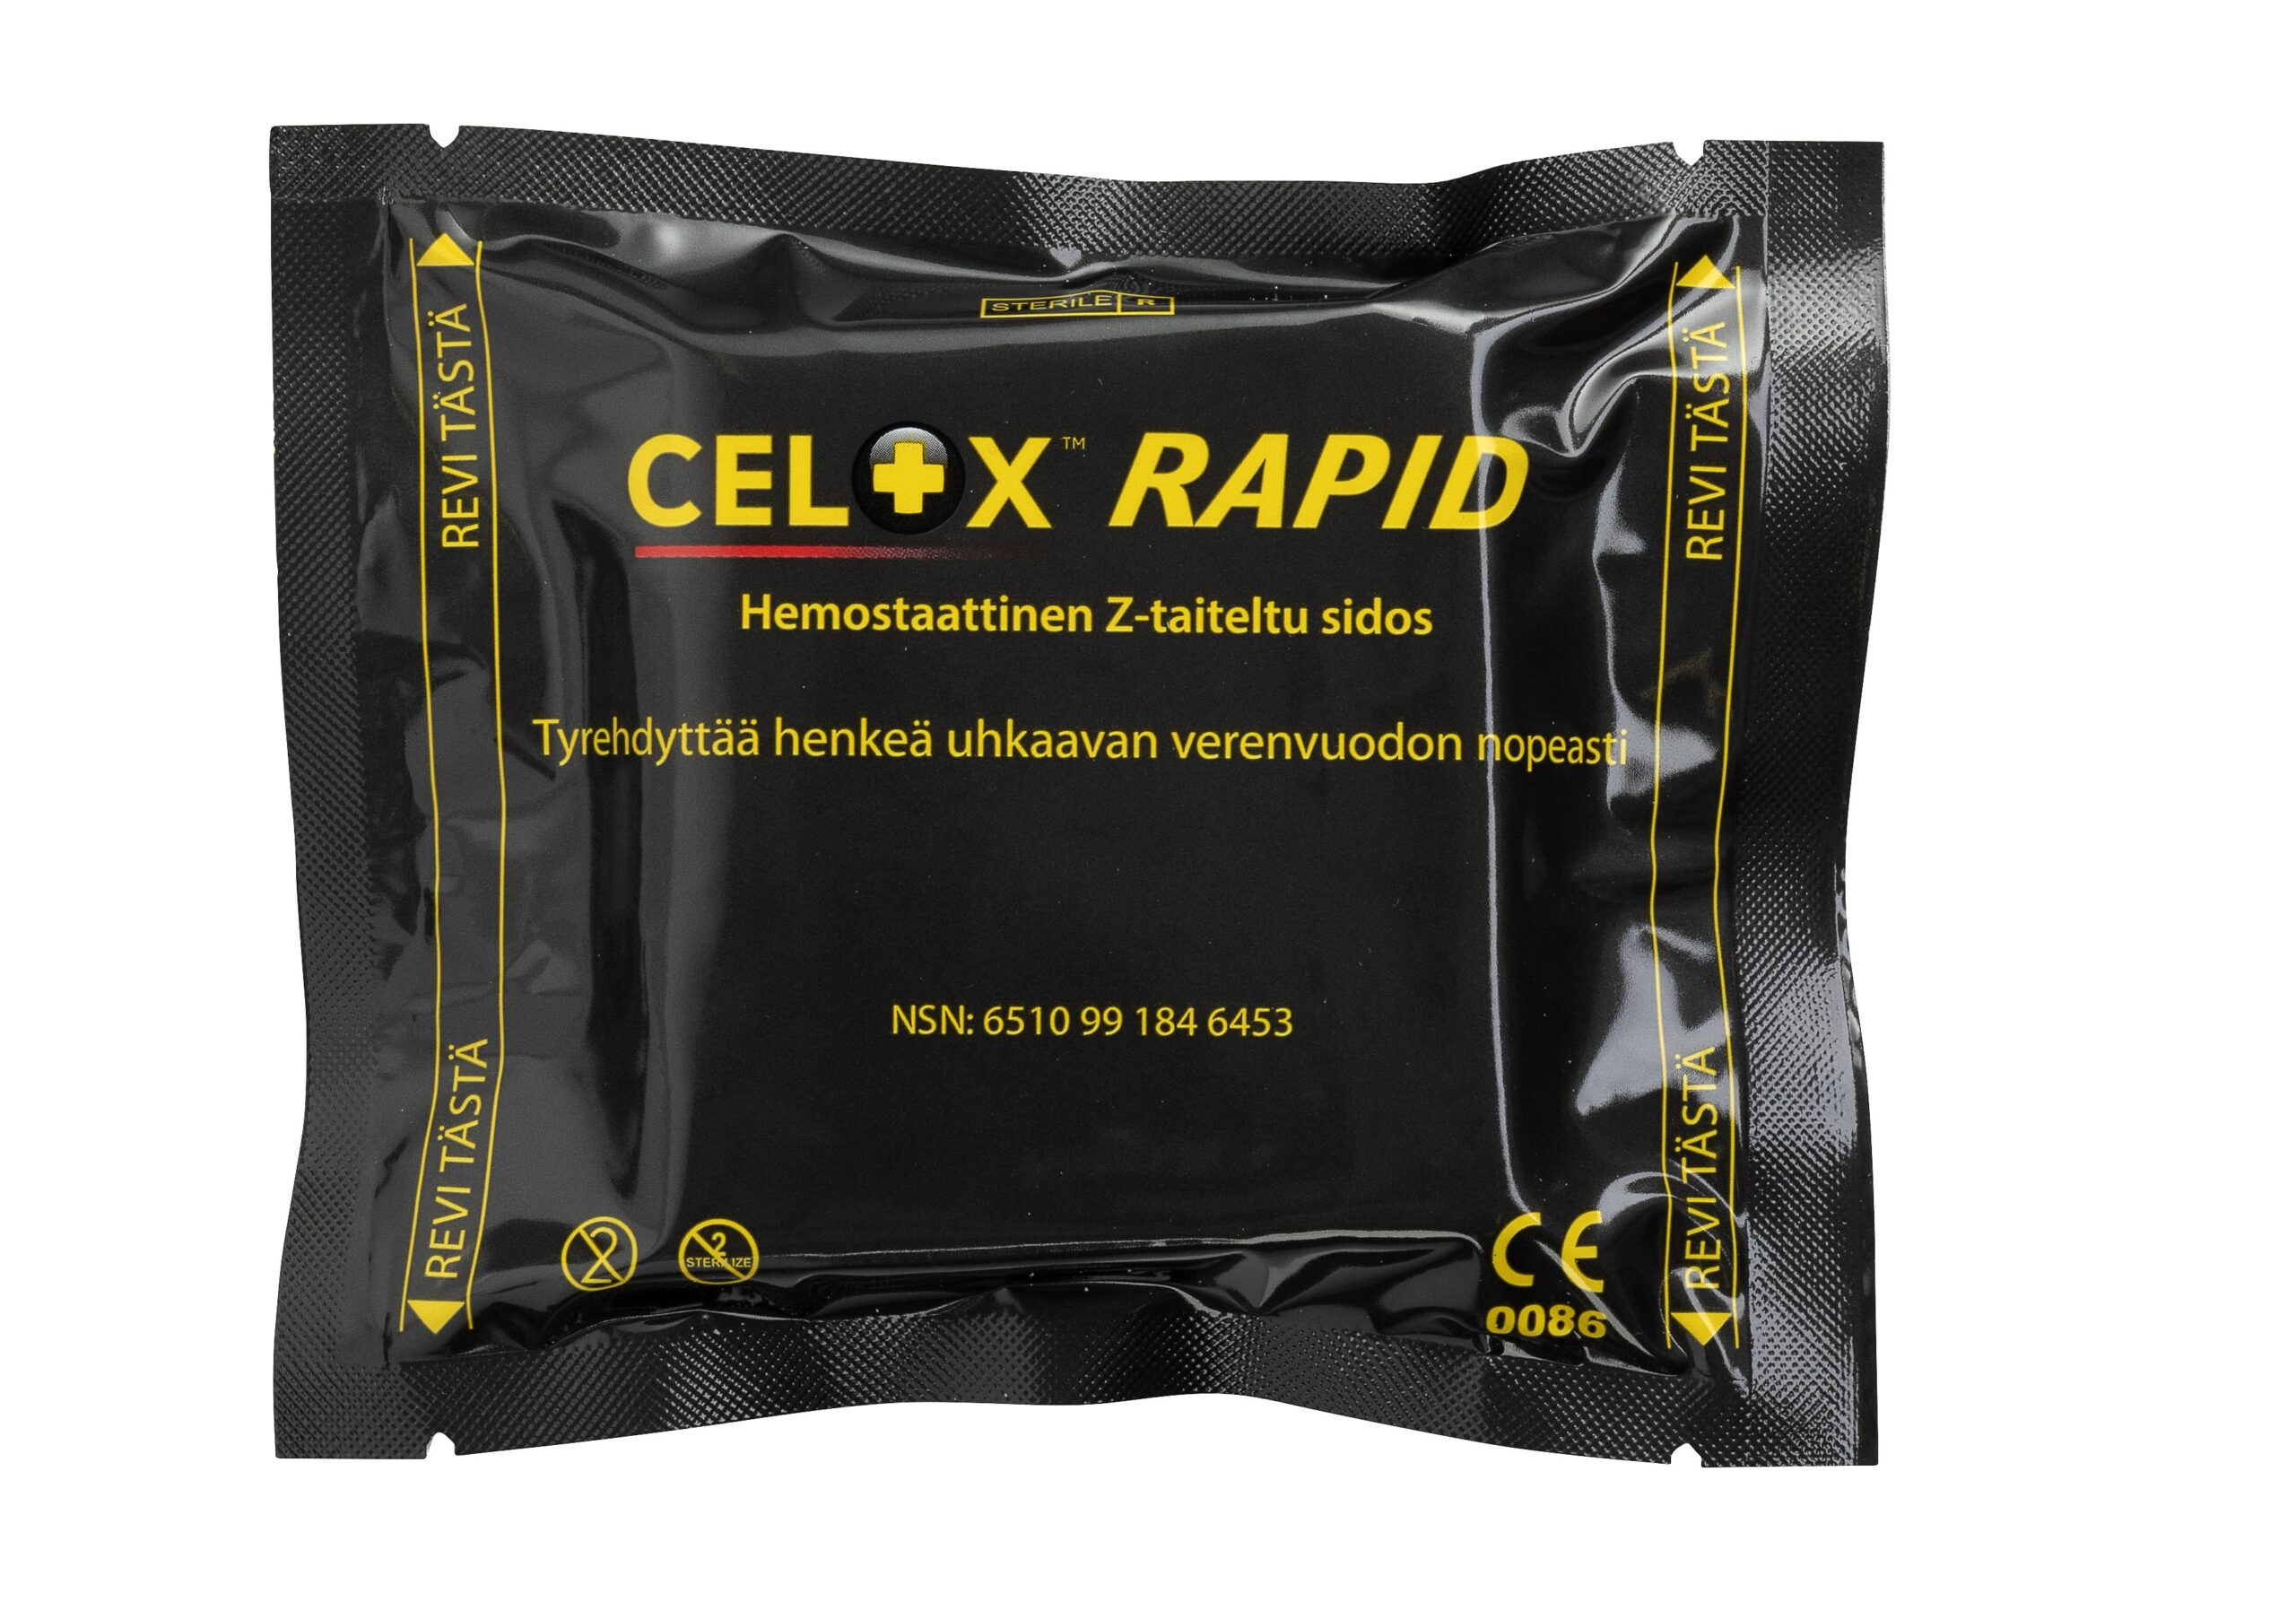 Celox Rapid hemostaattinen Z-taiteltu sidos